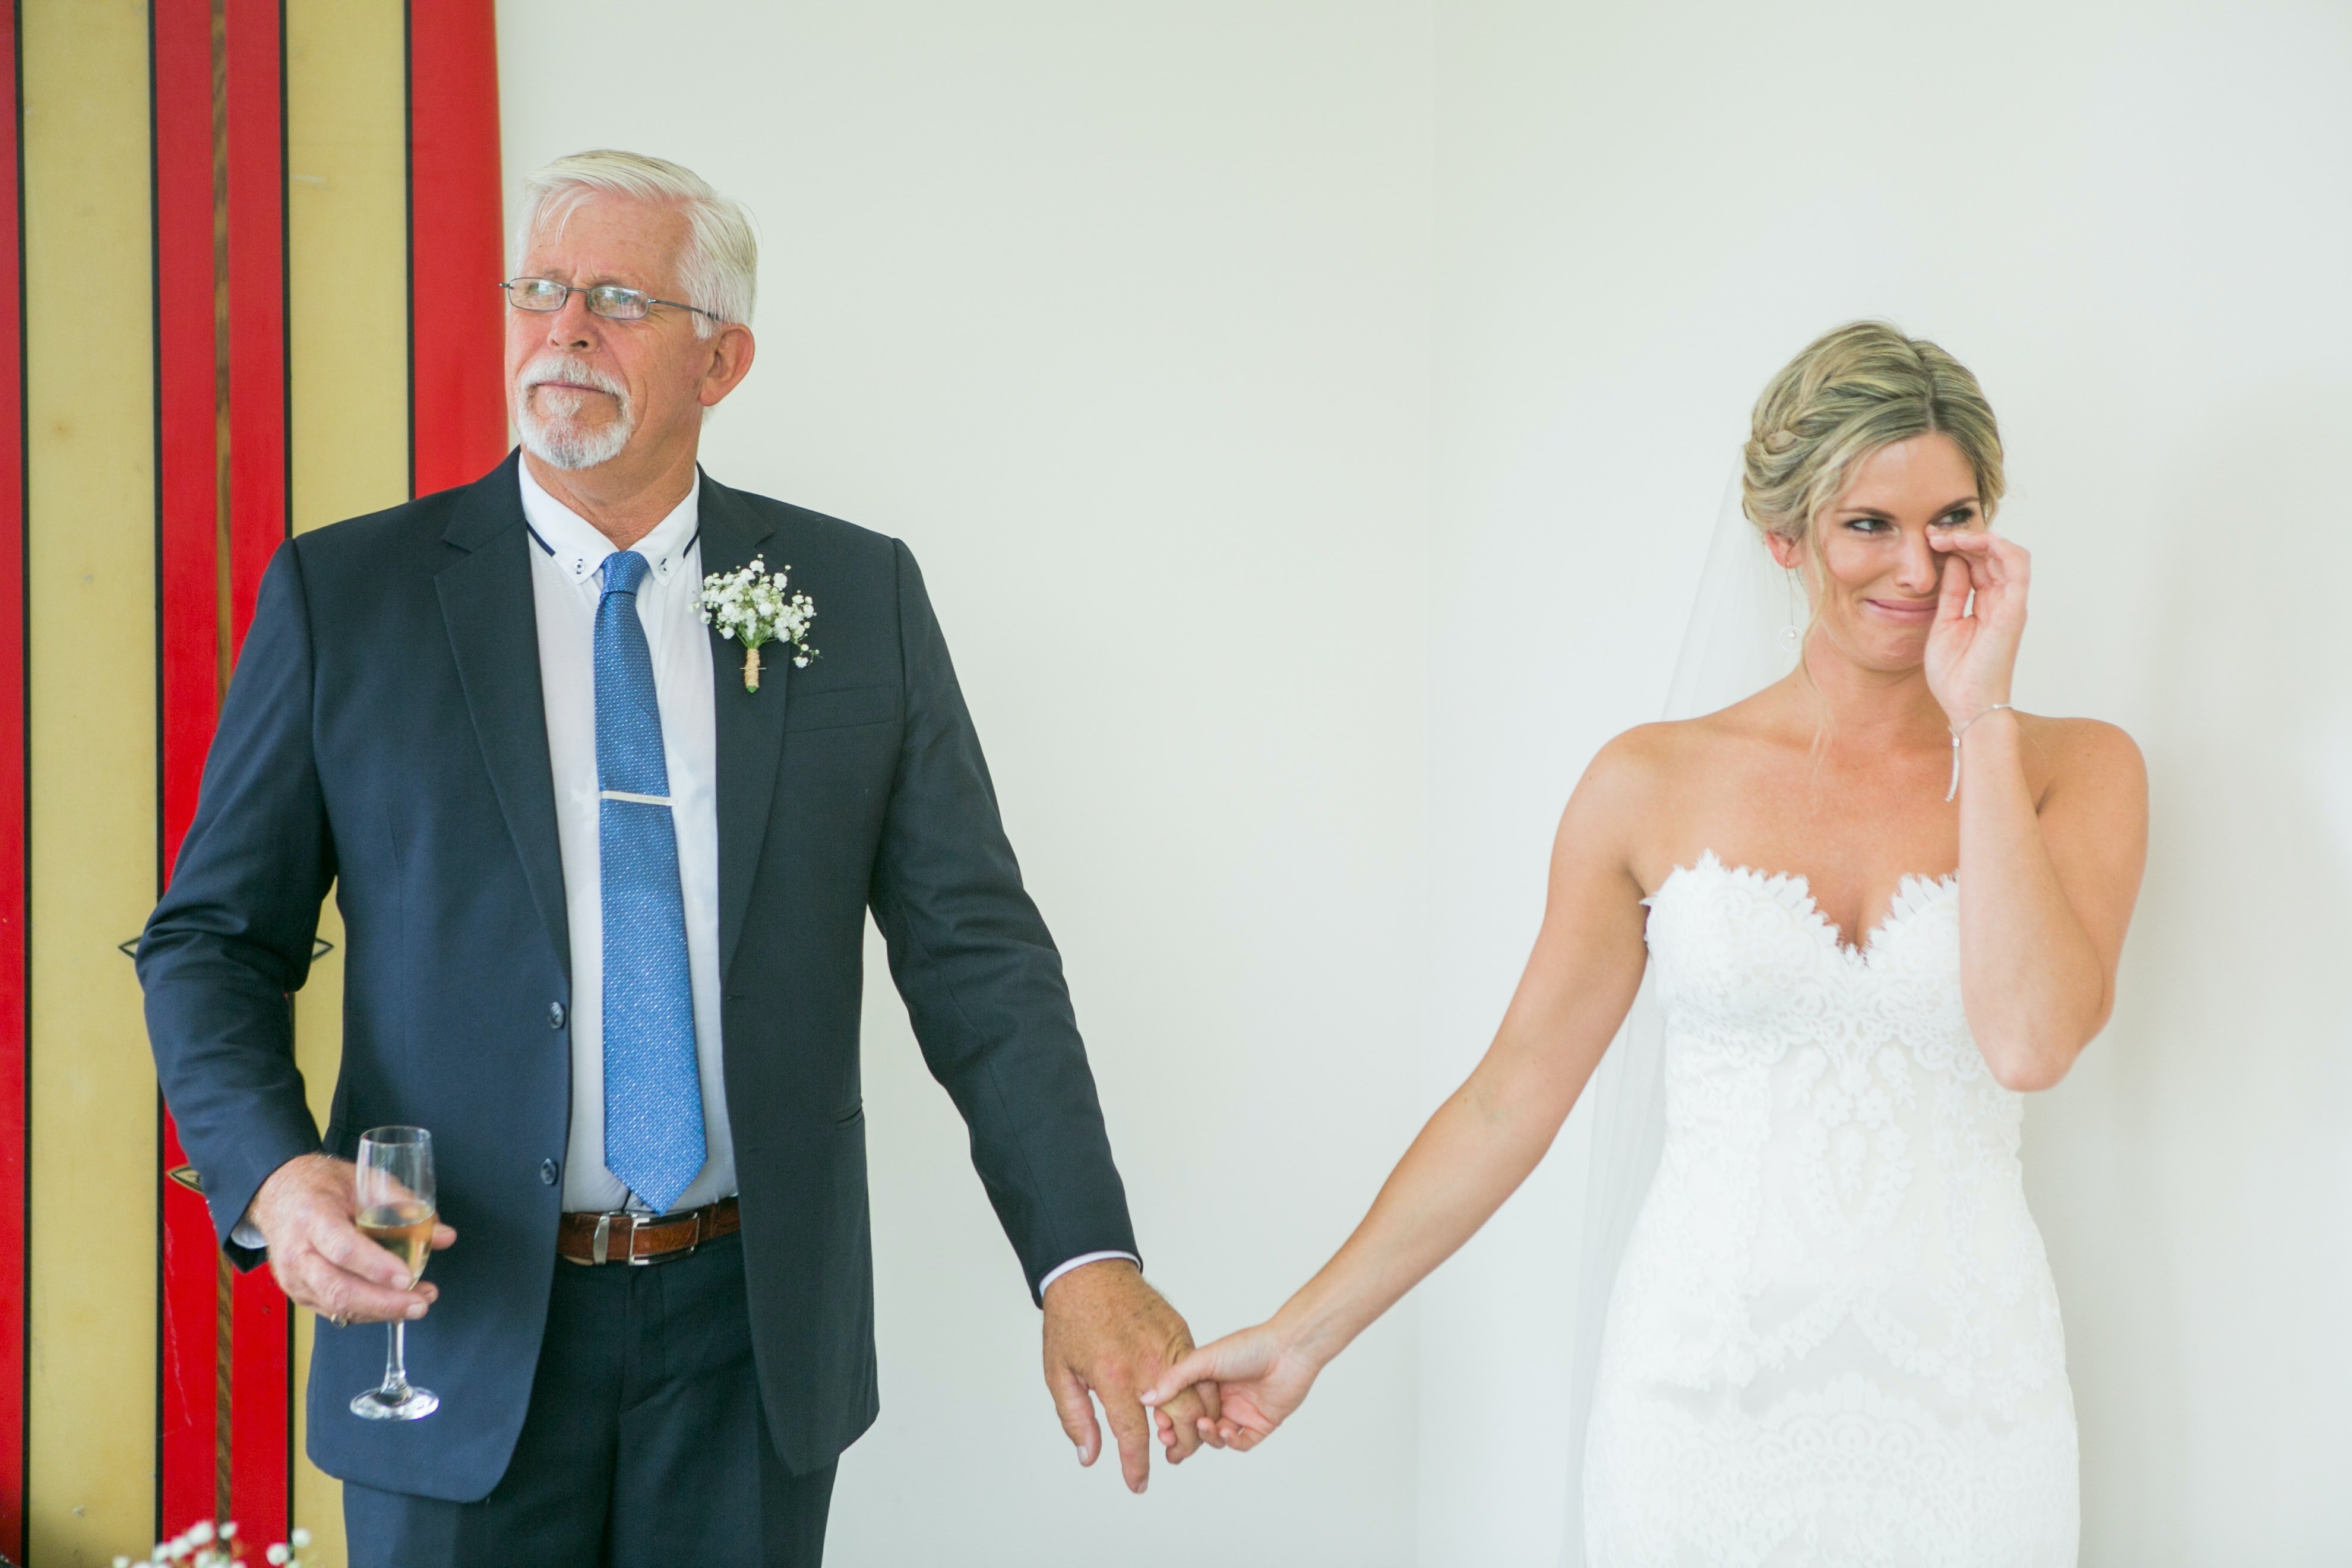 Un hombre mayor vestido de traje y una mujer vestida de novia tomados de la mano. | Foto: Unsplash